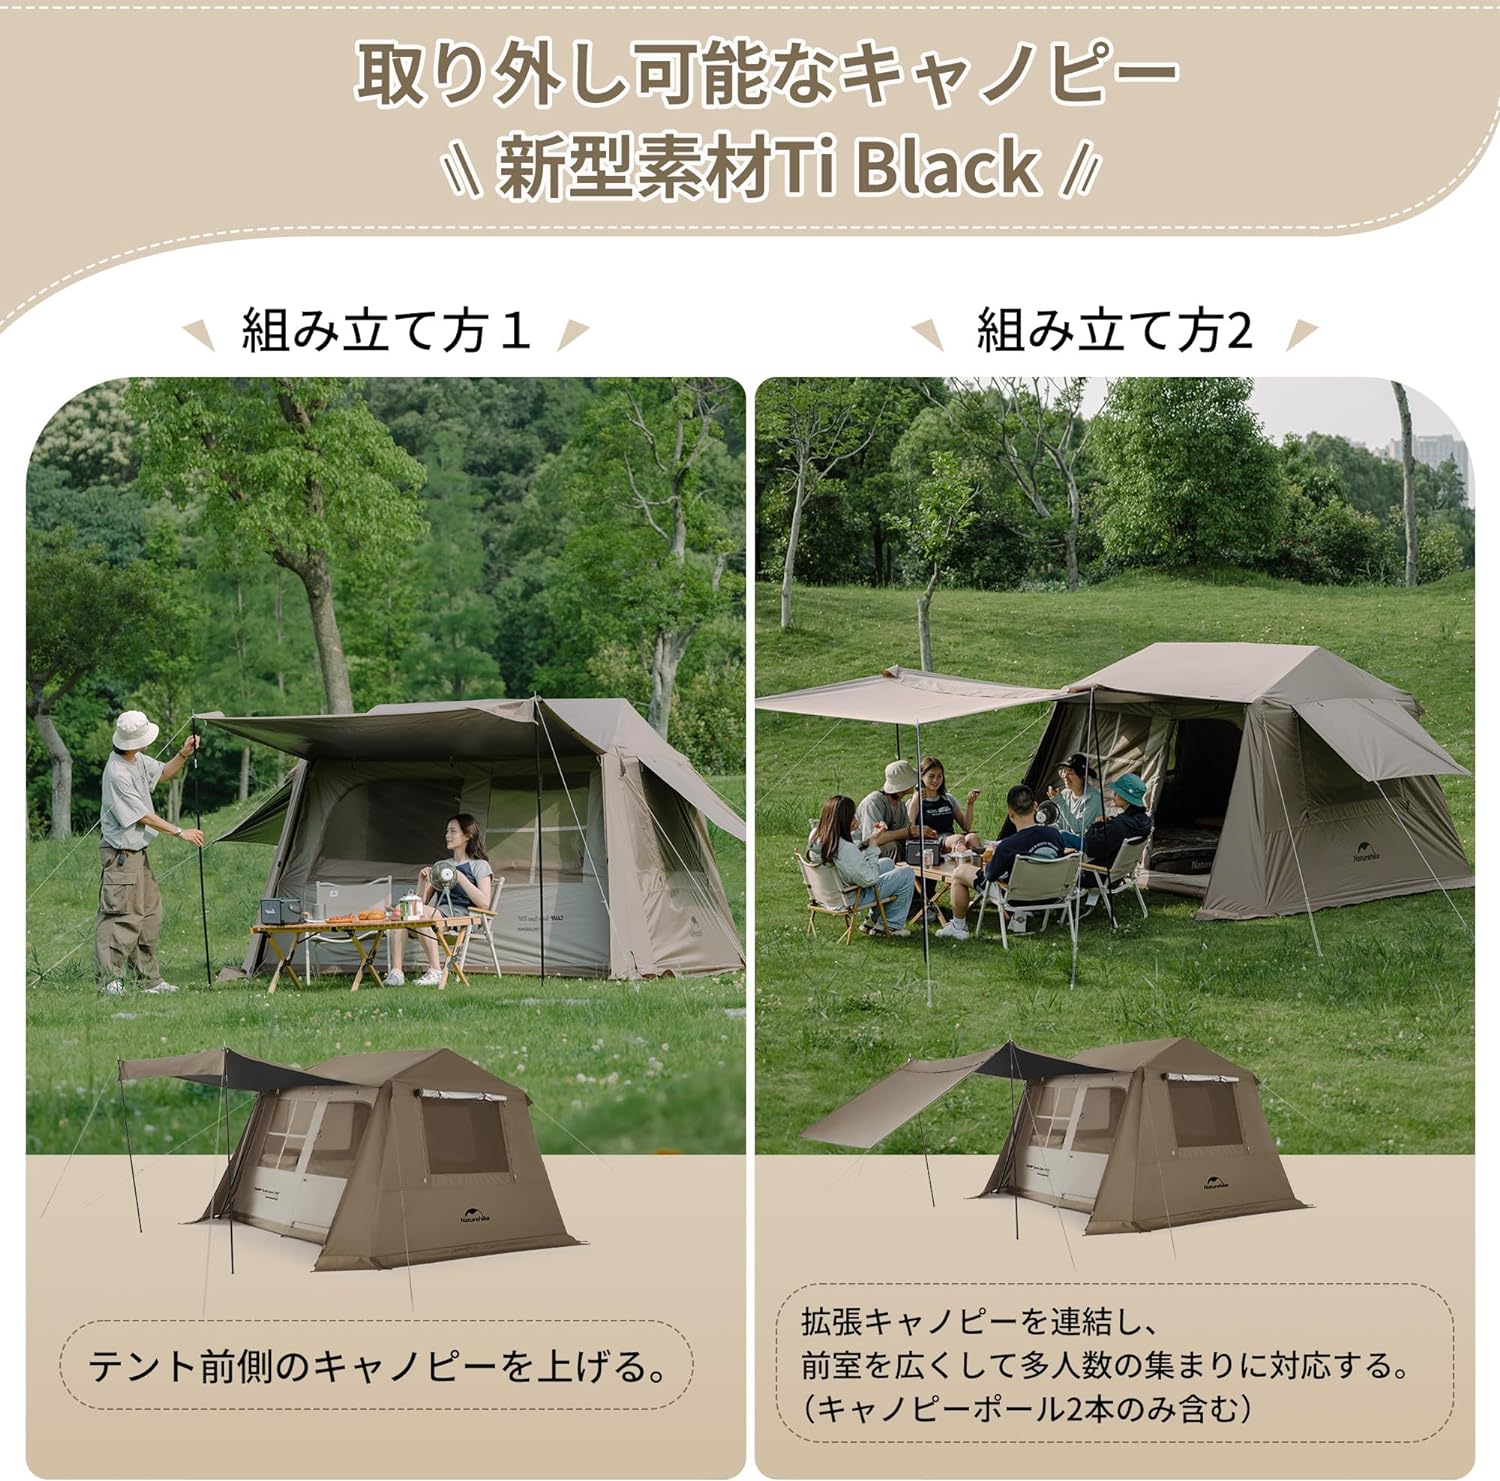 Naturehike Village6.0 ワンタッチ テント 4~6人用 Ti Black新型素材 UPF12500+ 拡張キャノピー キャンプ  ロッジ型